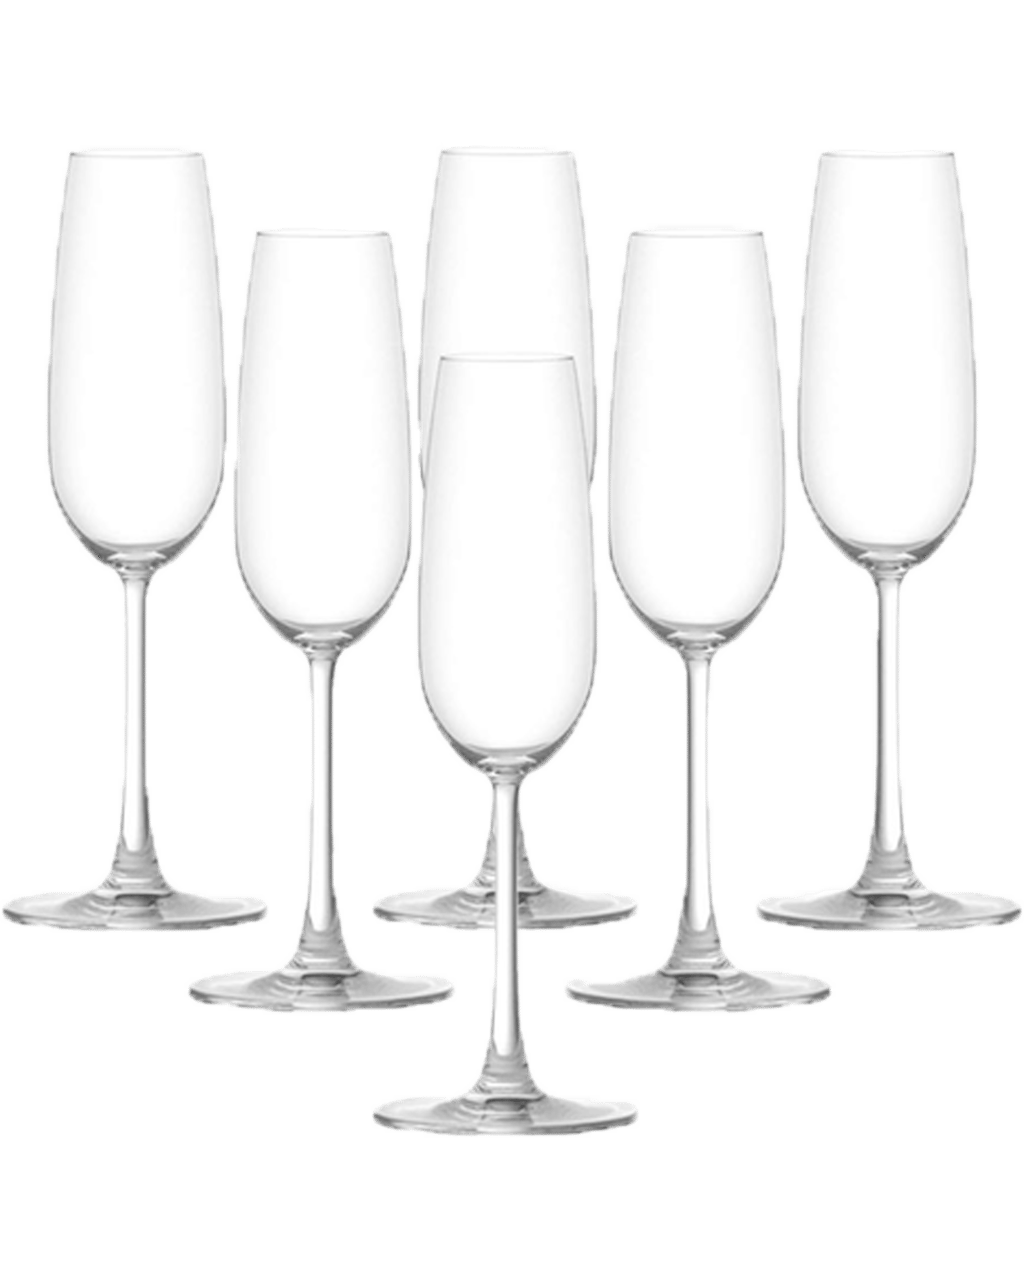 Ocean Madison Flute Champagne Glass Set (6 Pcs) - 210 ml - (For